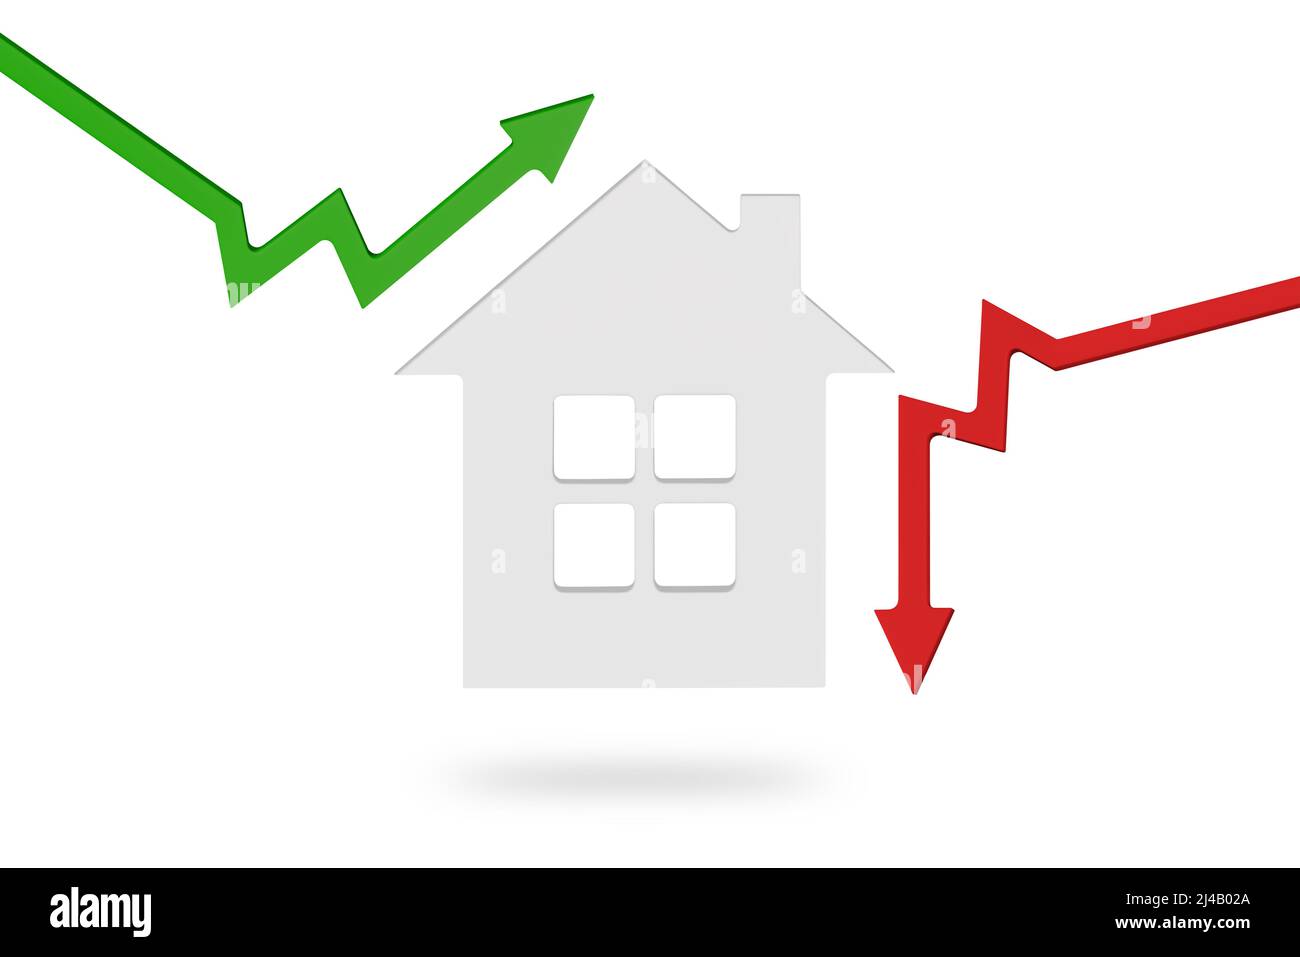 Mercado inmobiliario, gráfico, flecha arriba. Modelo de casa y una pila de monedas. El concepto de inflación, crecimiento económico, precio de los servicios de seguros Foto de stock